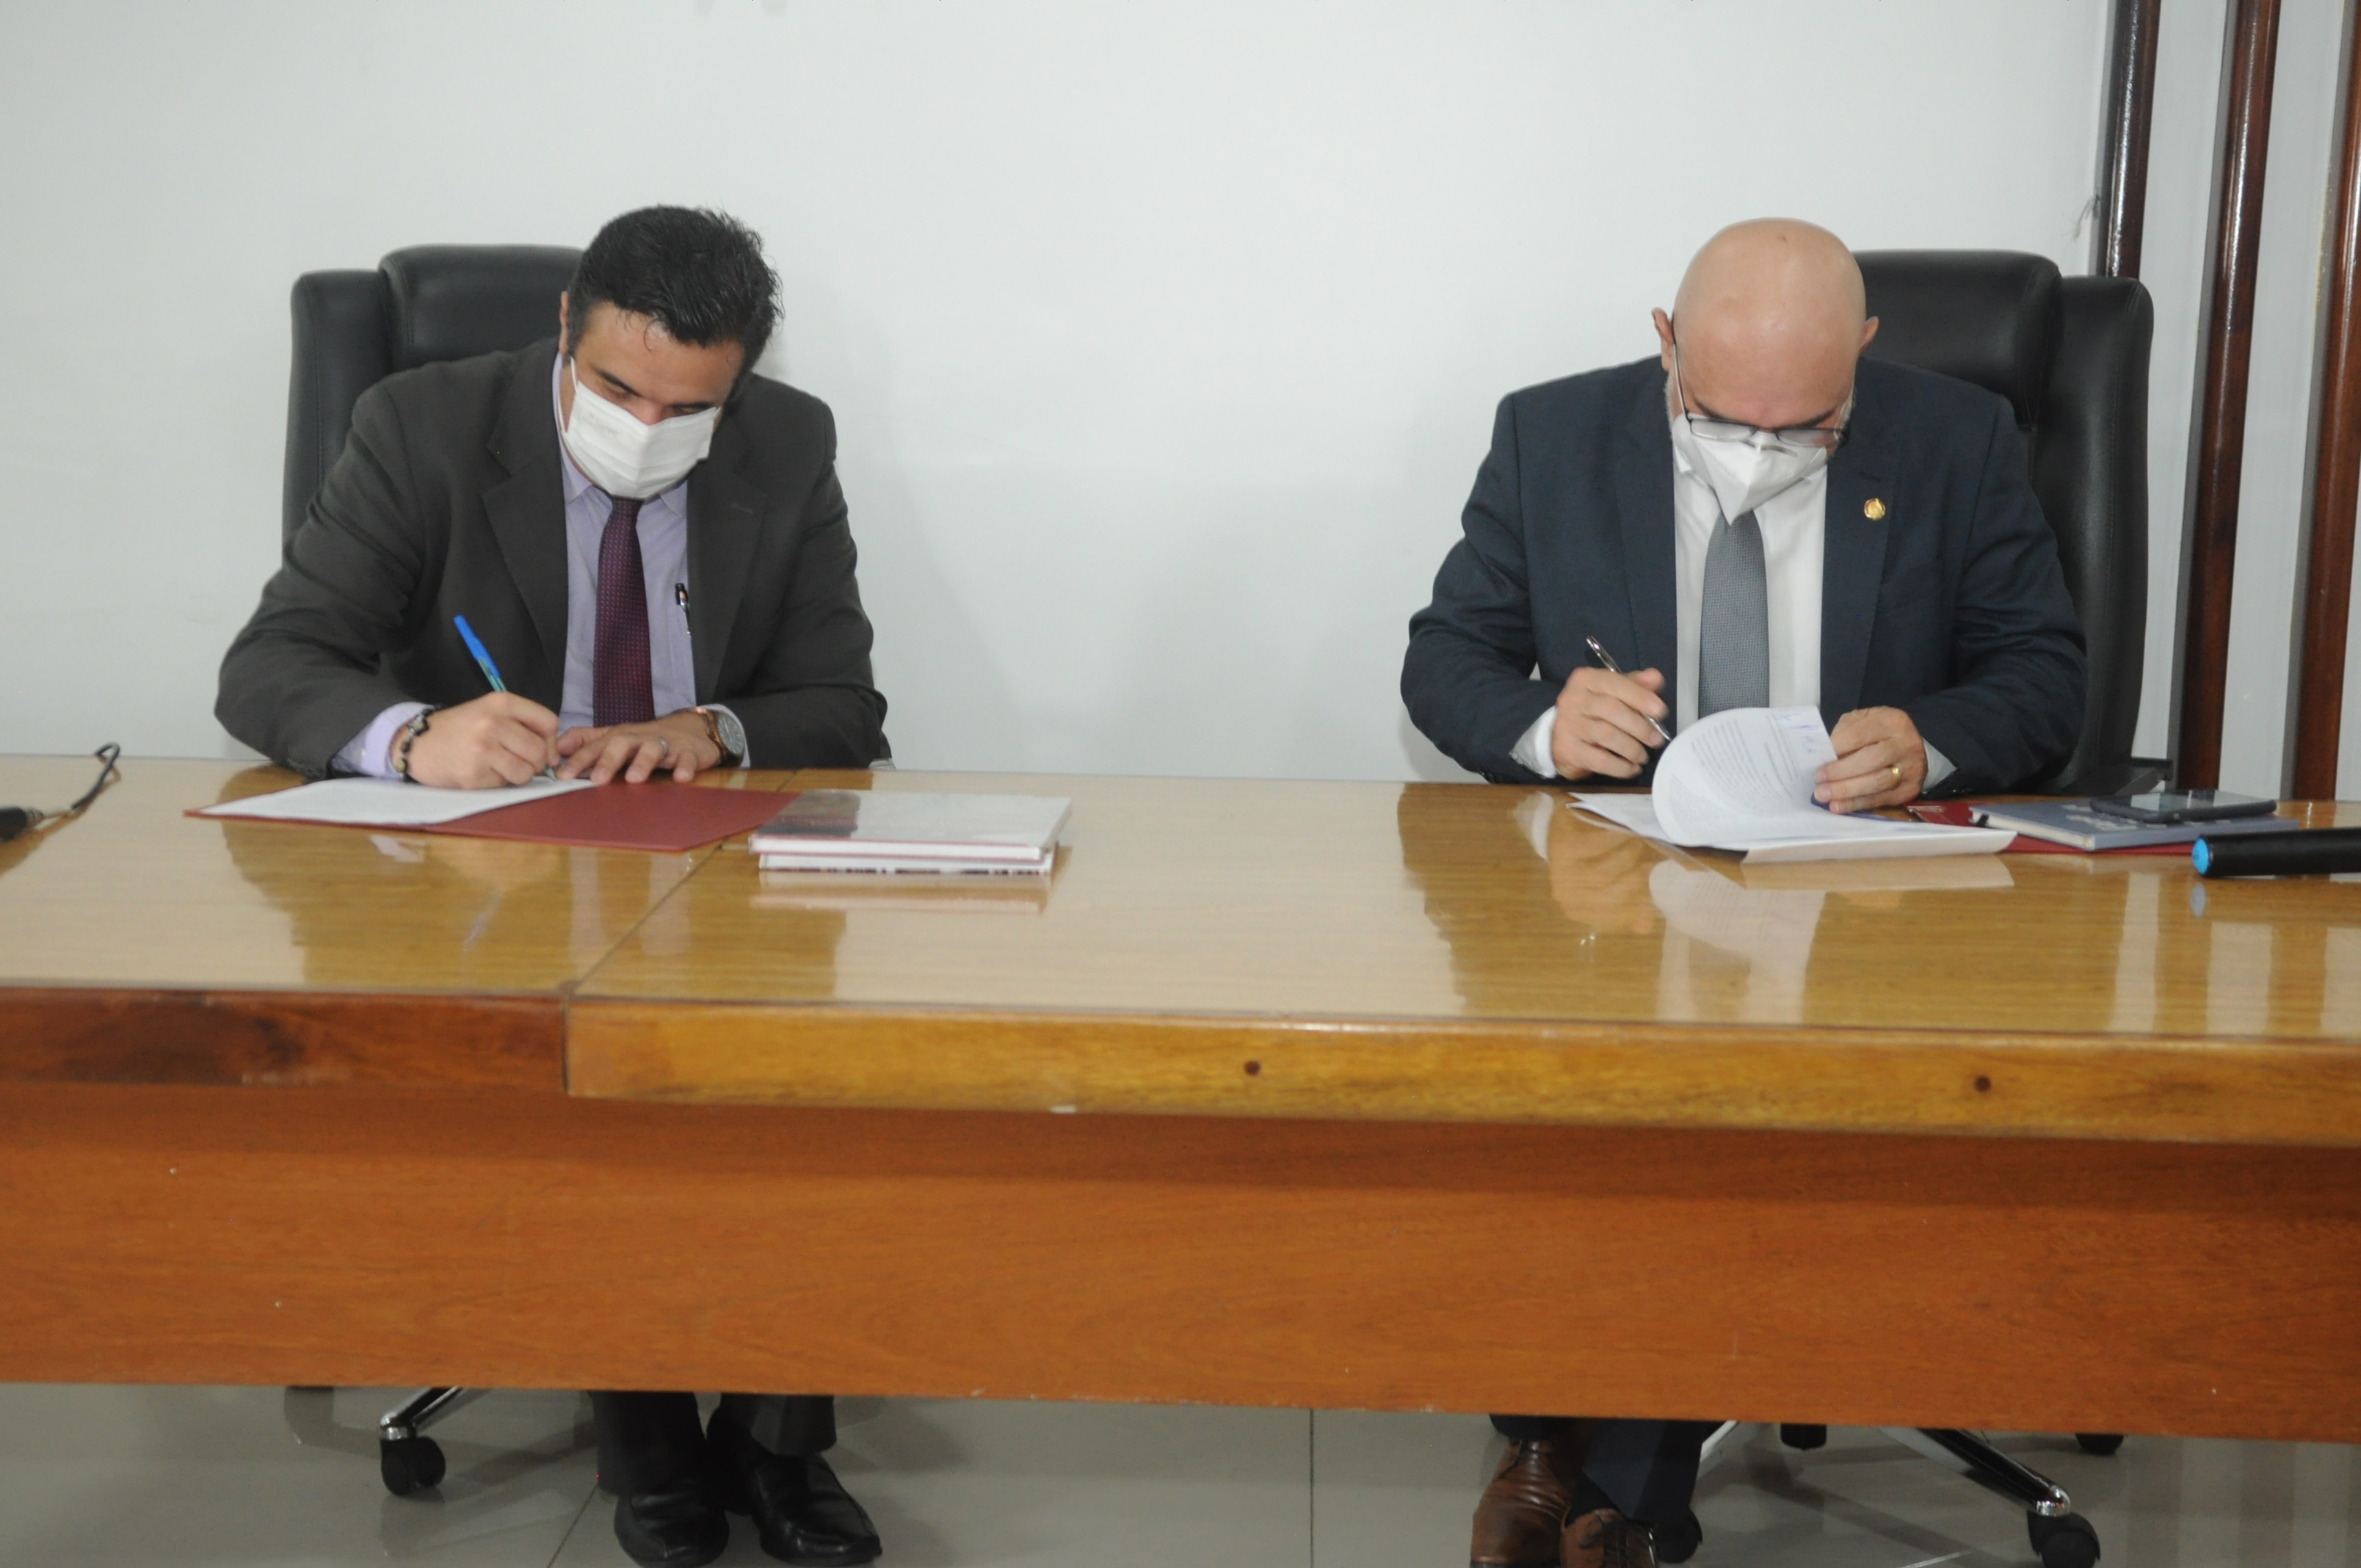  Convênio entre a Câmara Municipal de Caruaru e Universidade Federal de Pernambuco é firmado nesta sexta-feira (07)